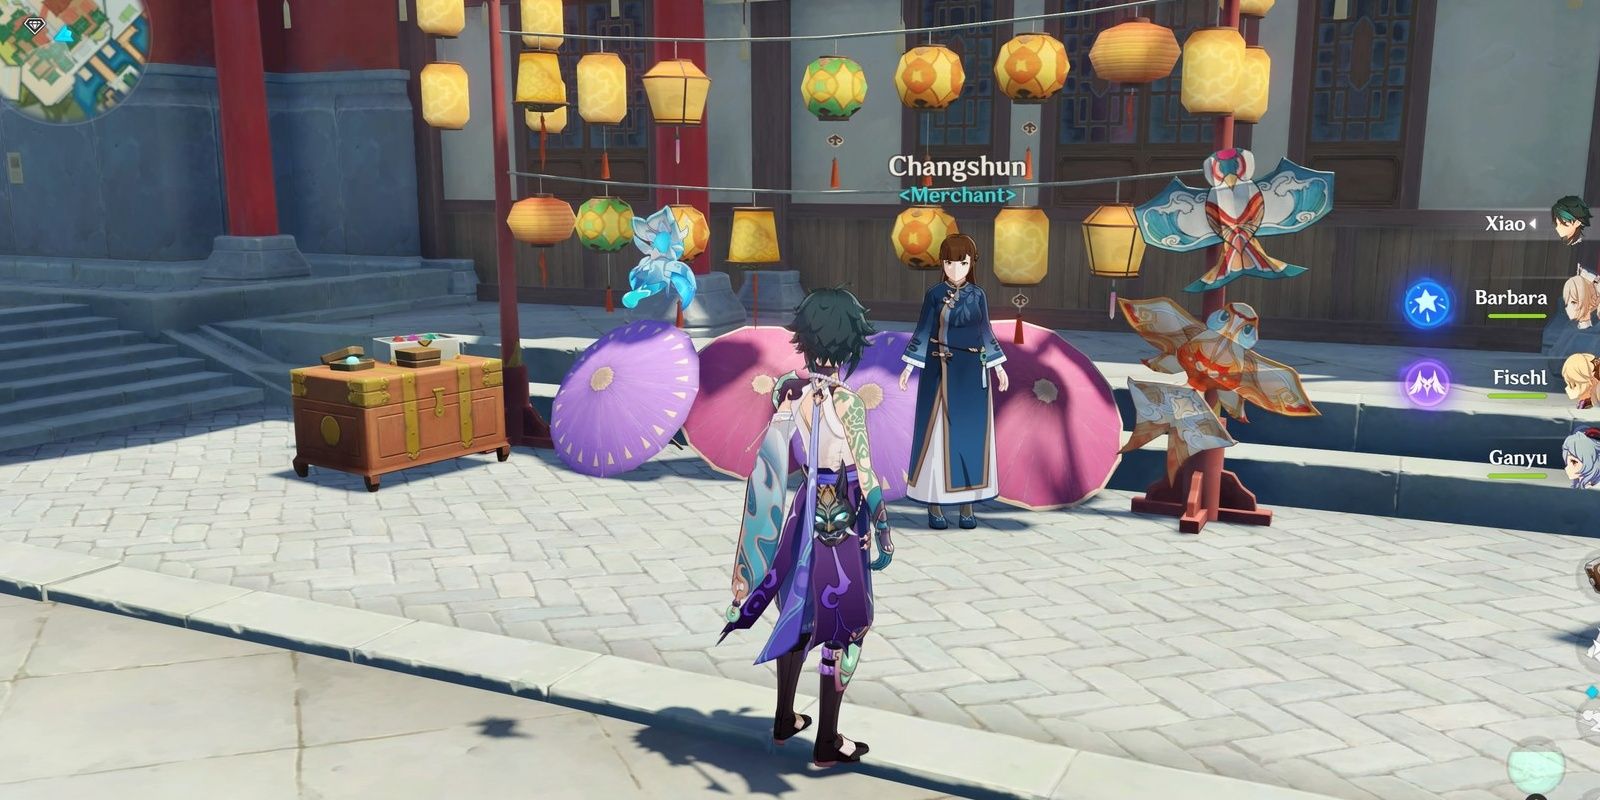 Genshin Impact: Xiao stands in front of Changsun's shop in Liyue